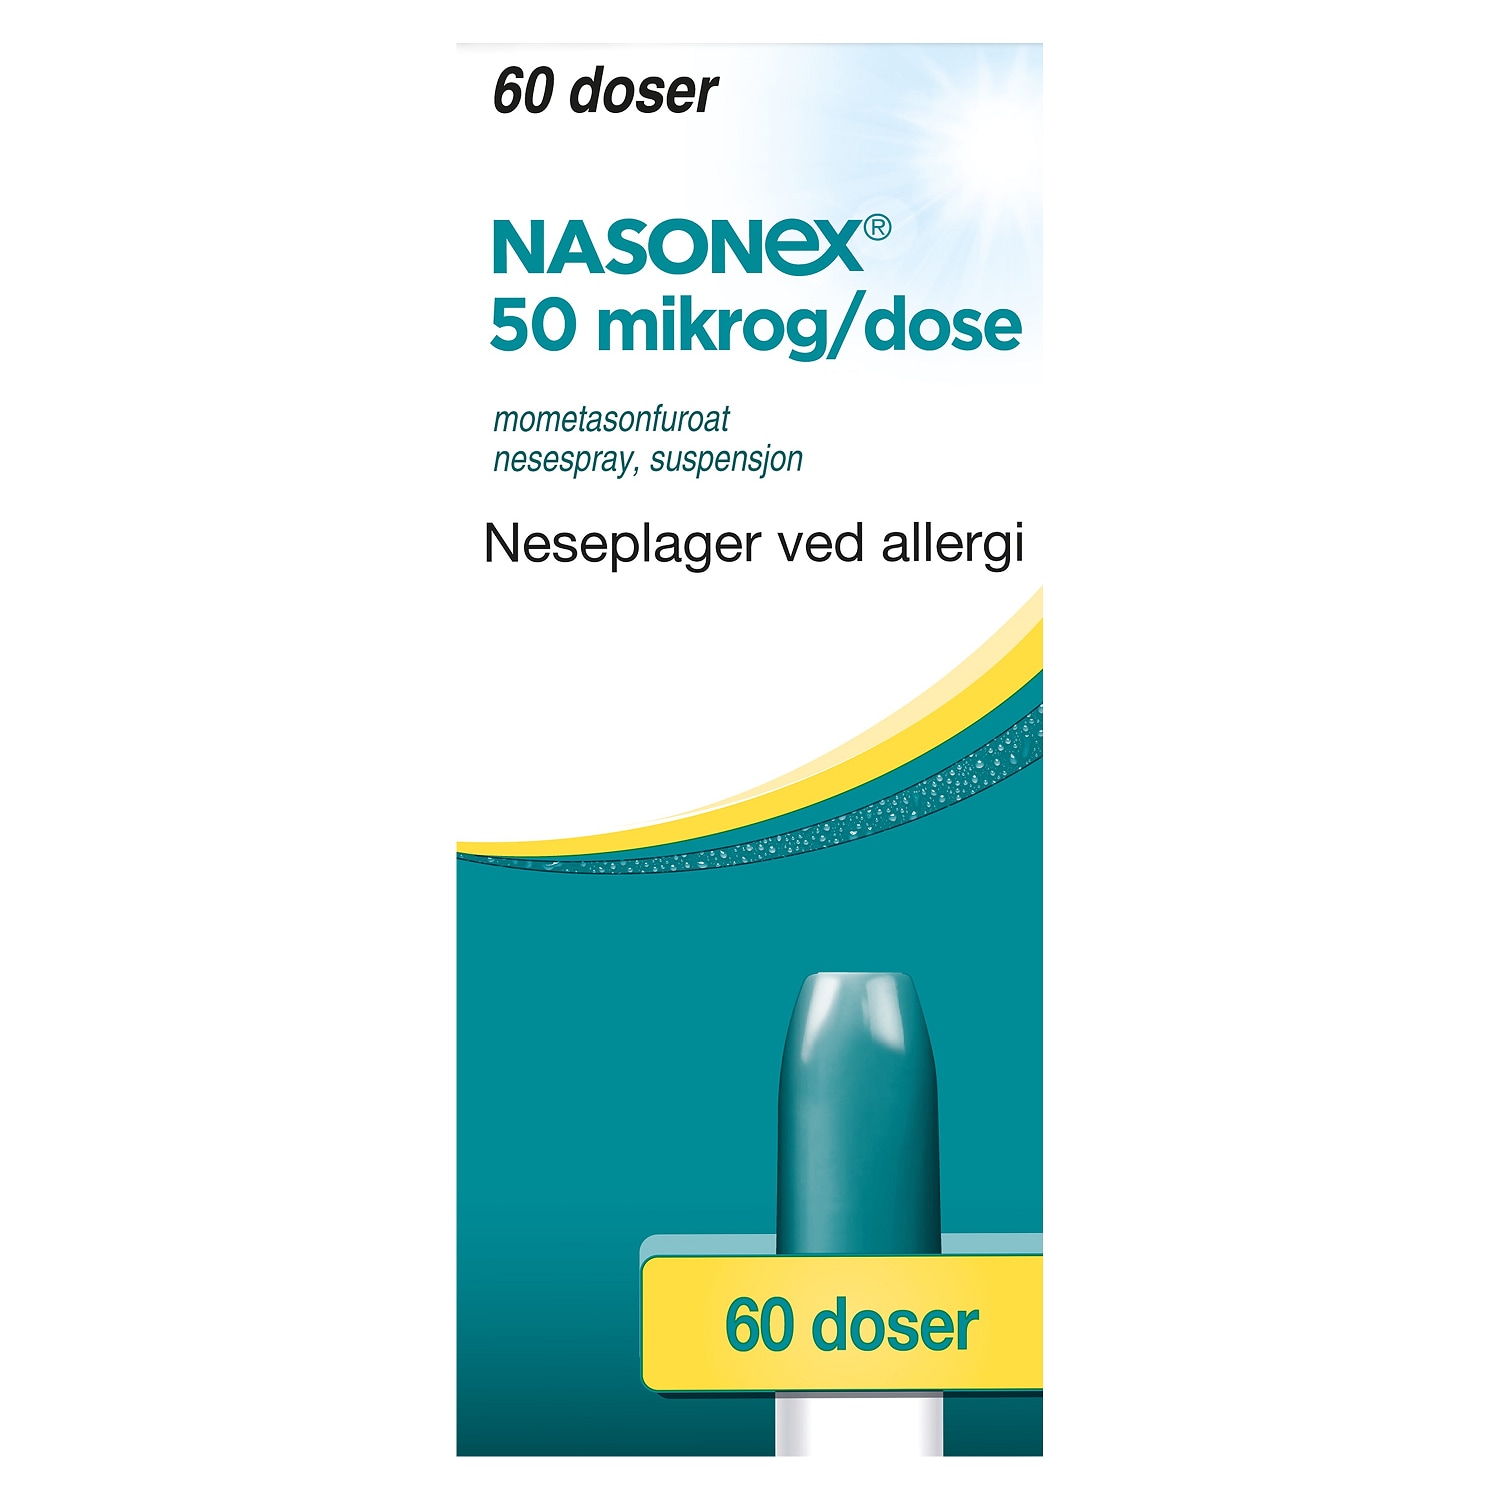 Nasonex nässpray 60 doser Norway